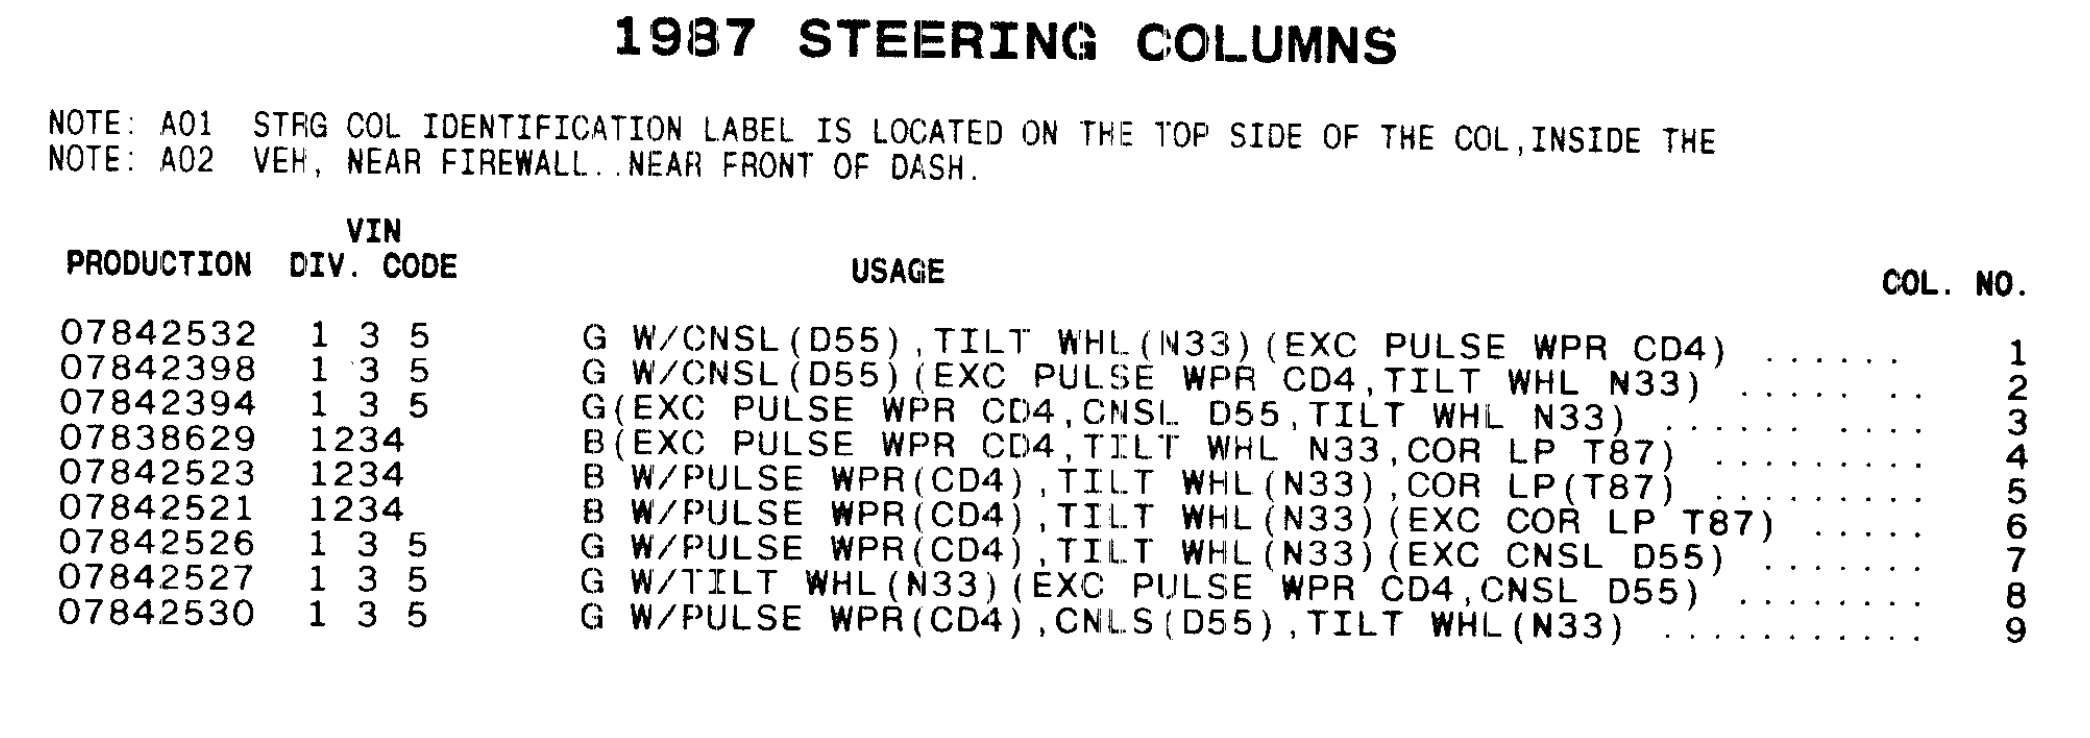 1987 Olds steering column applications.jpg